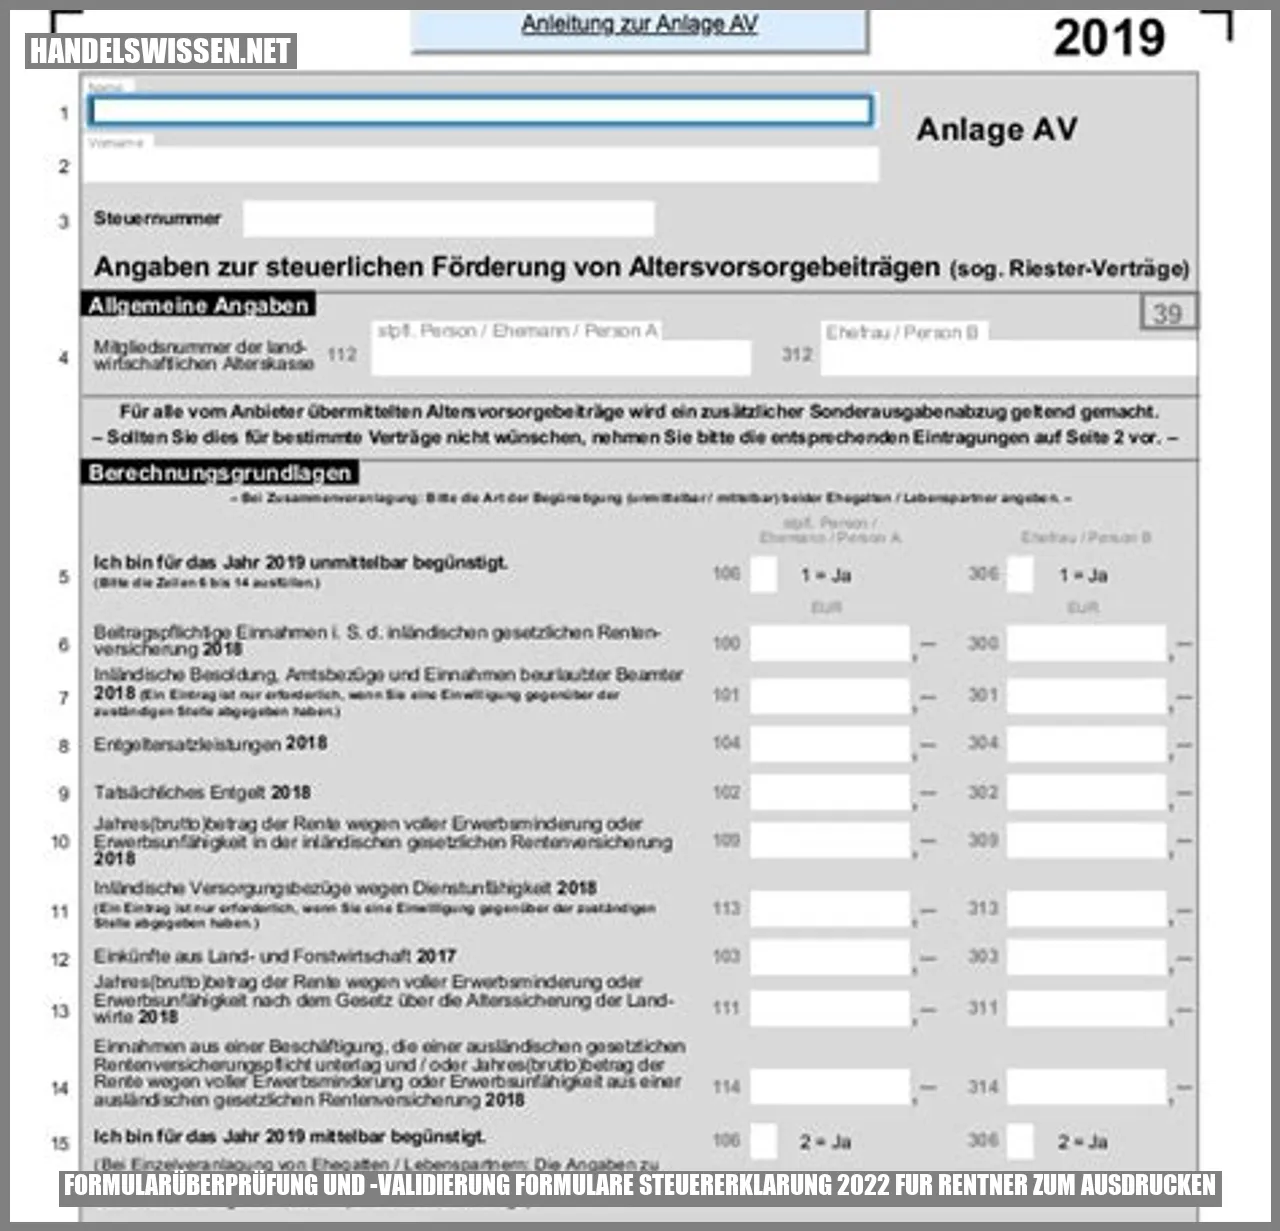 Formularüberprüfung und -validierung formulare steuererklarung 2022 fur rentner zum ausdrucken